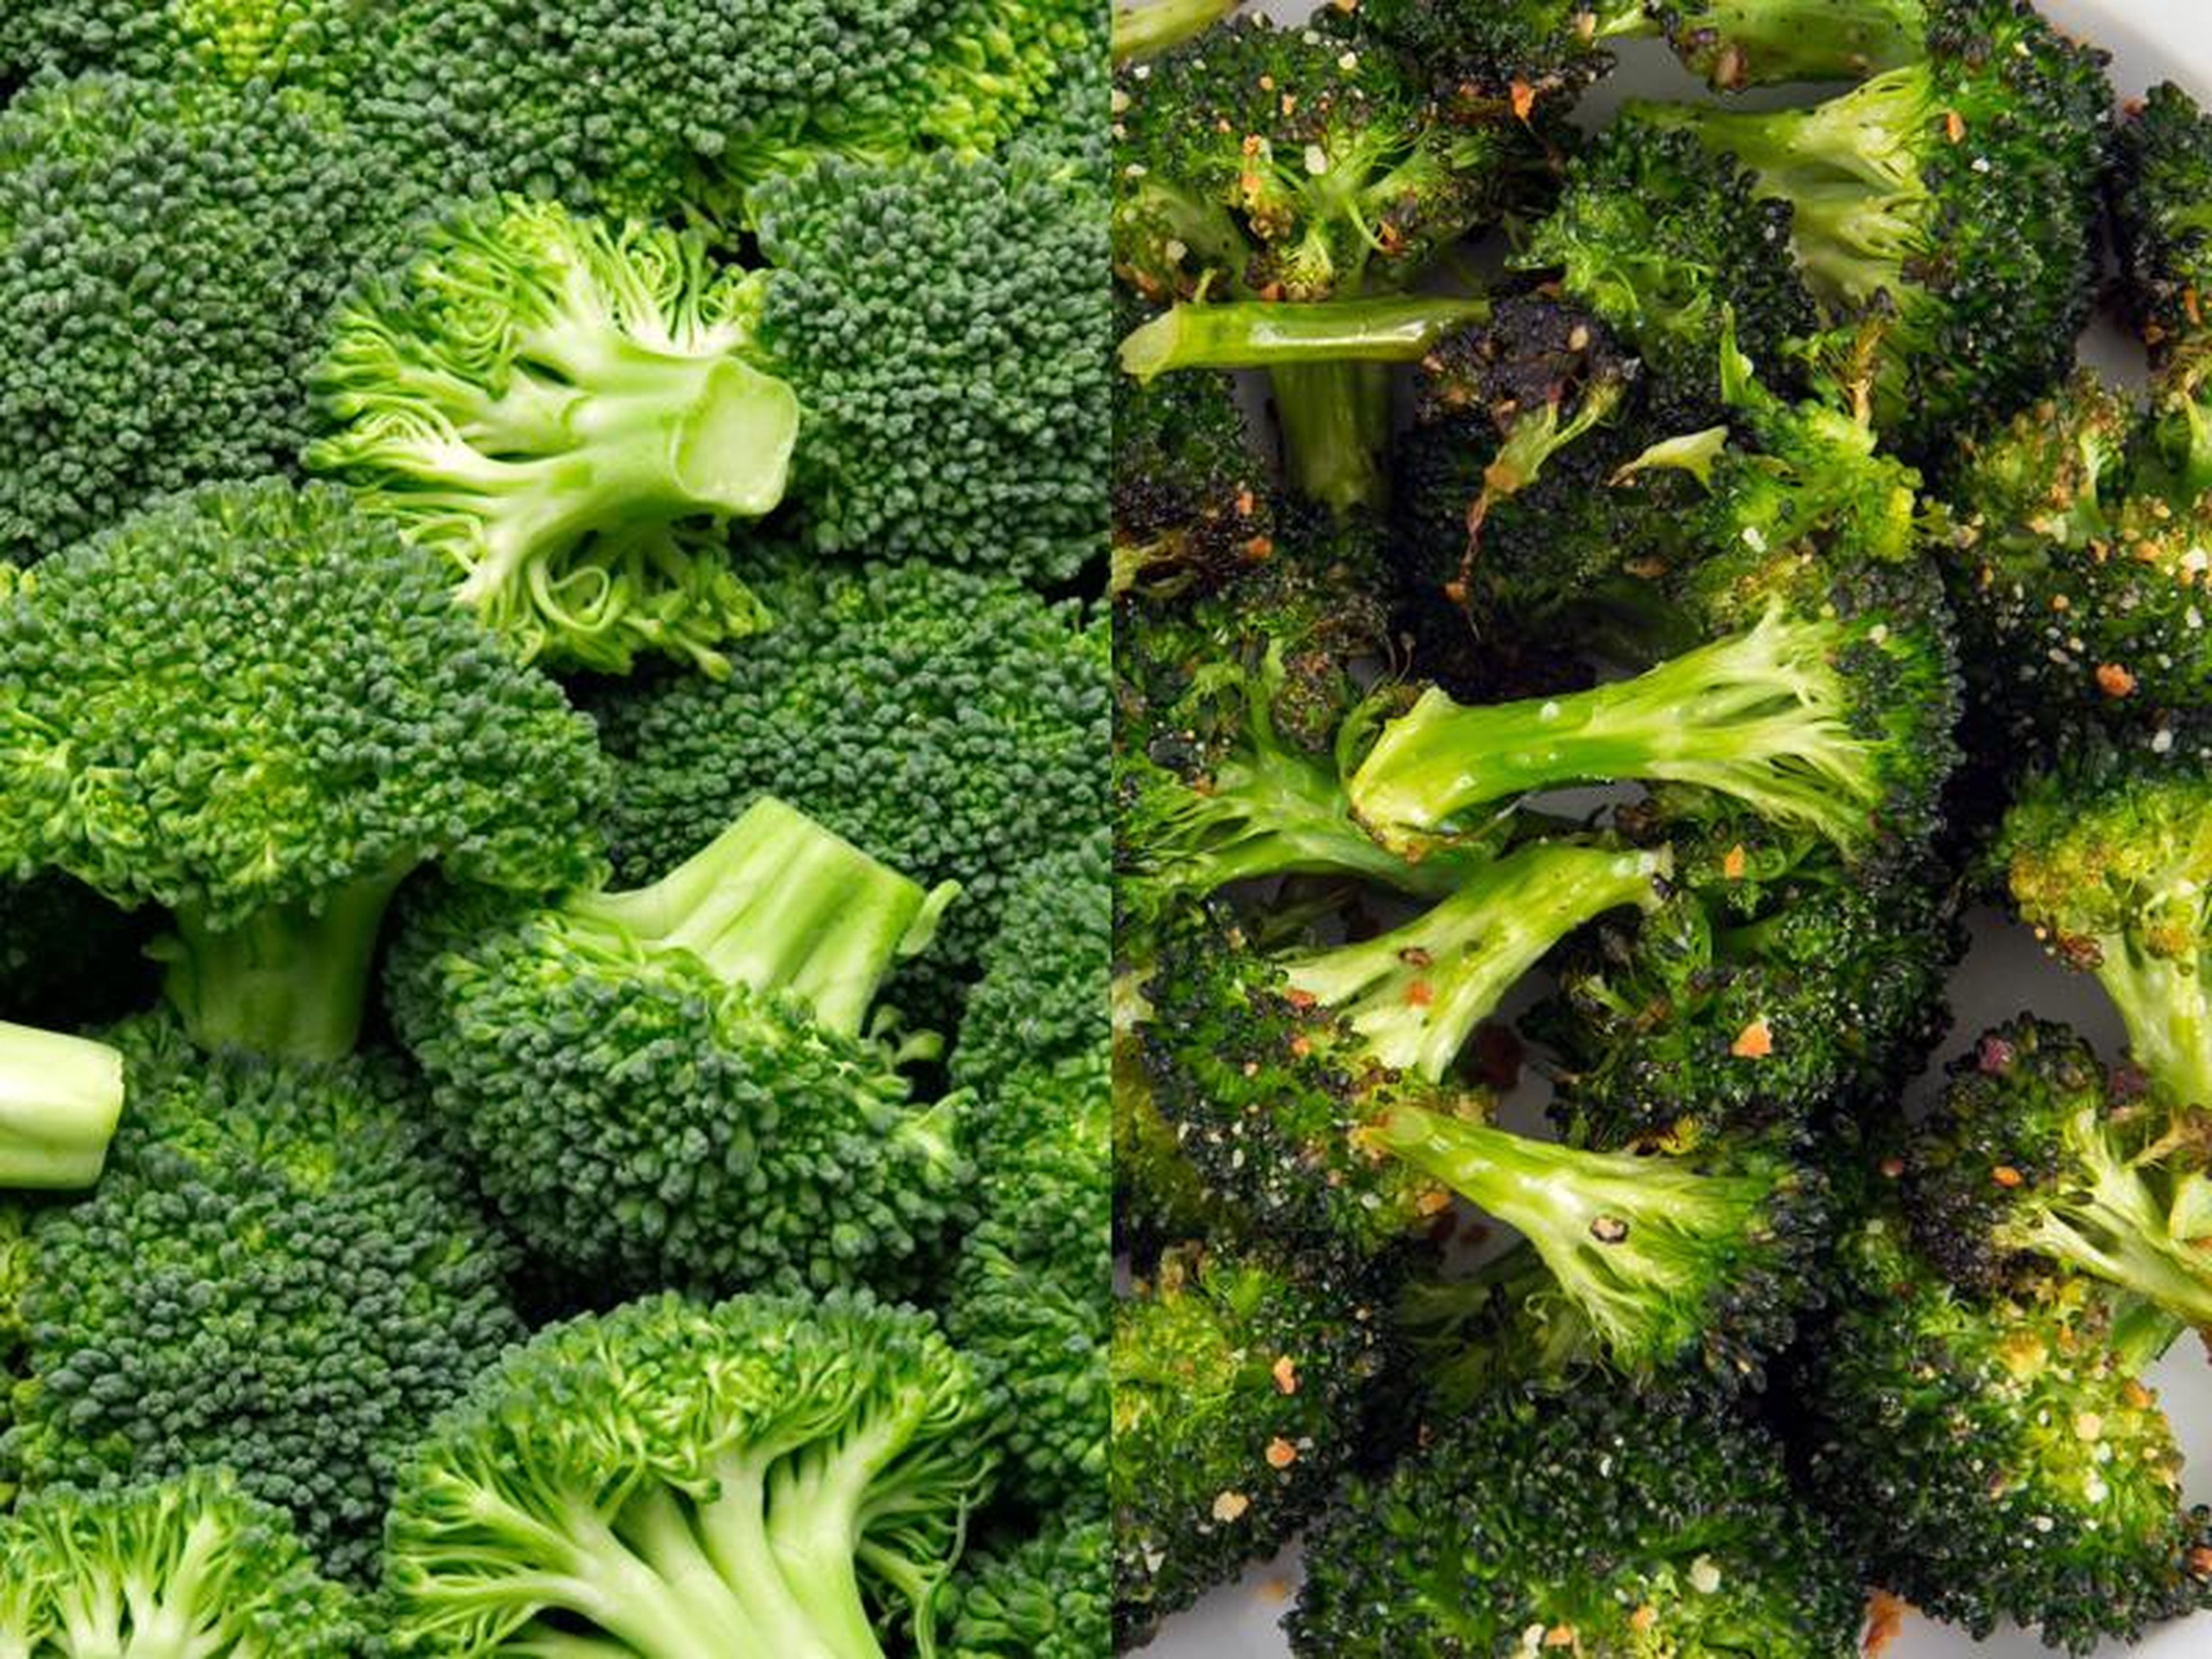 Las verduras crucíferas crudas pueden causar problemas digestivos.